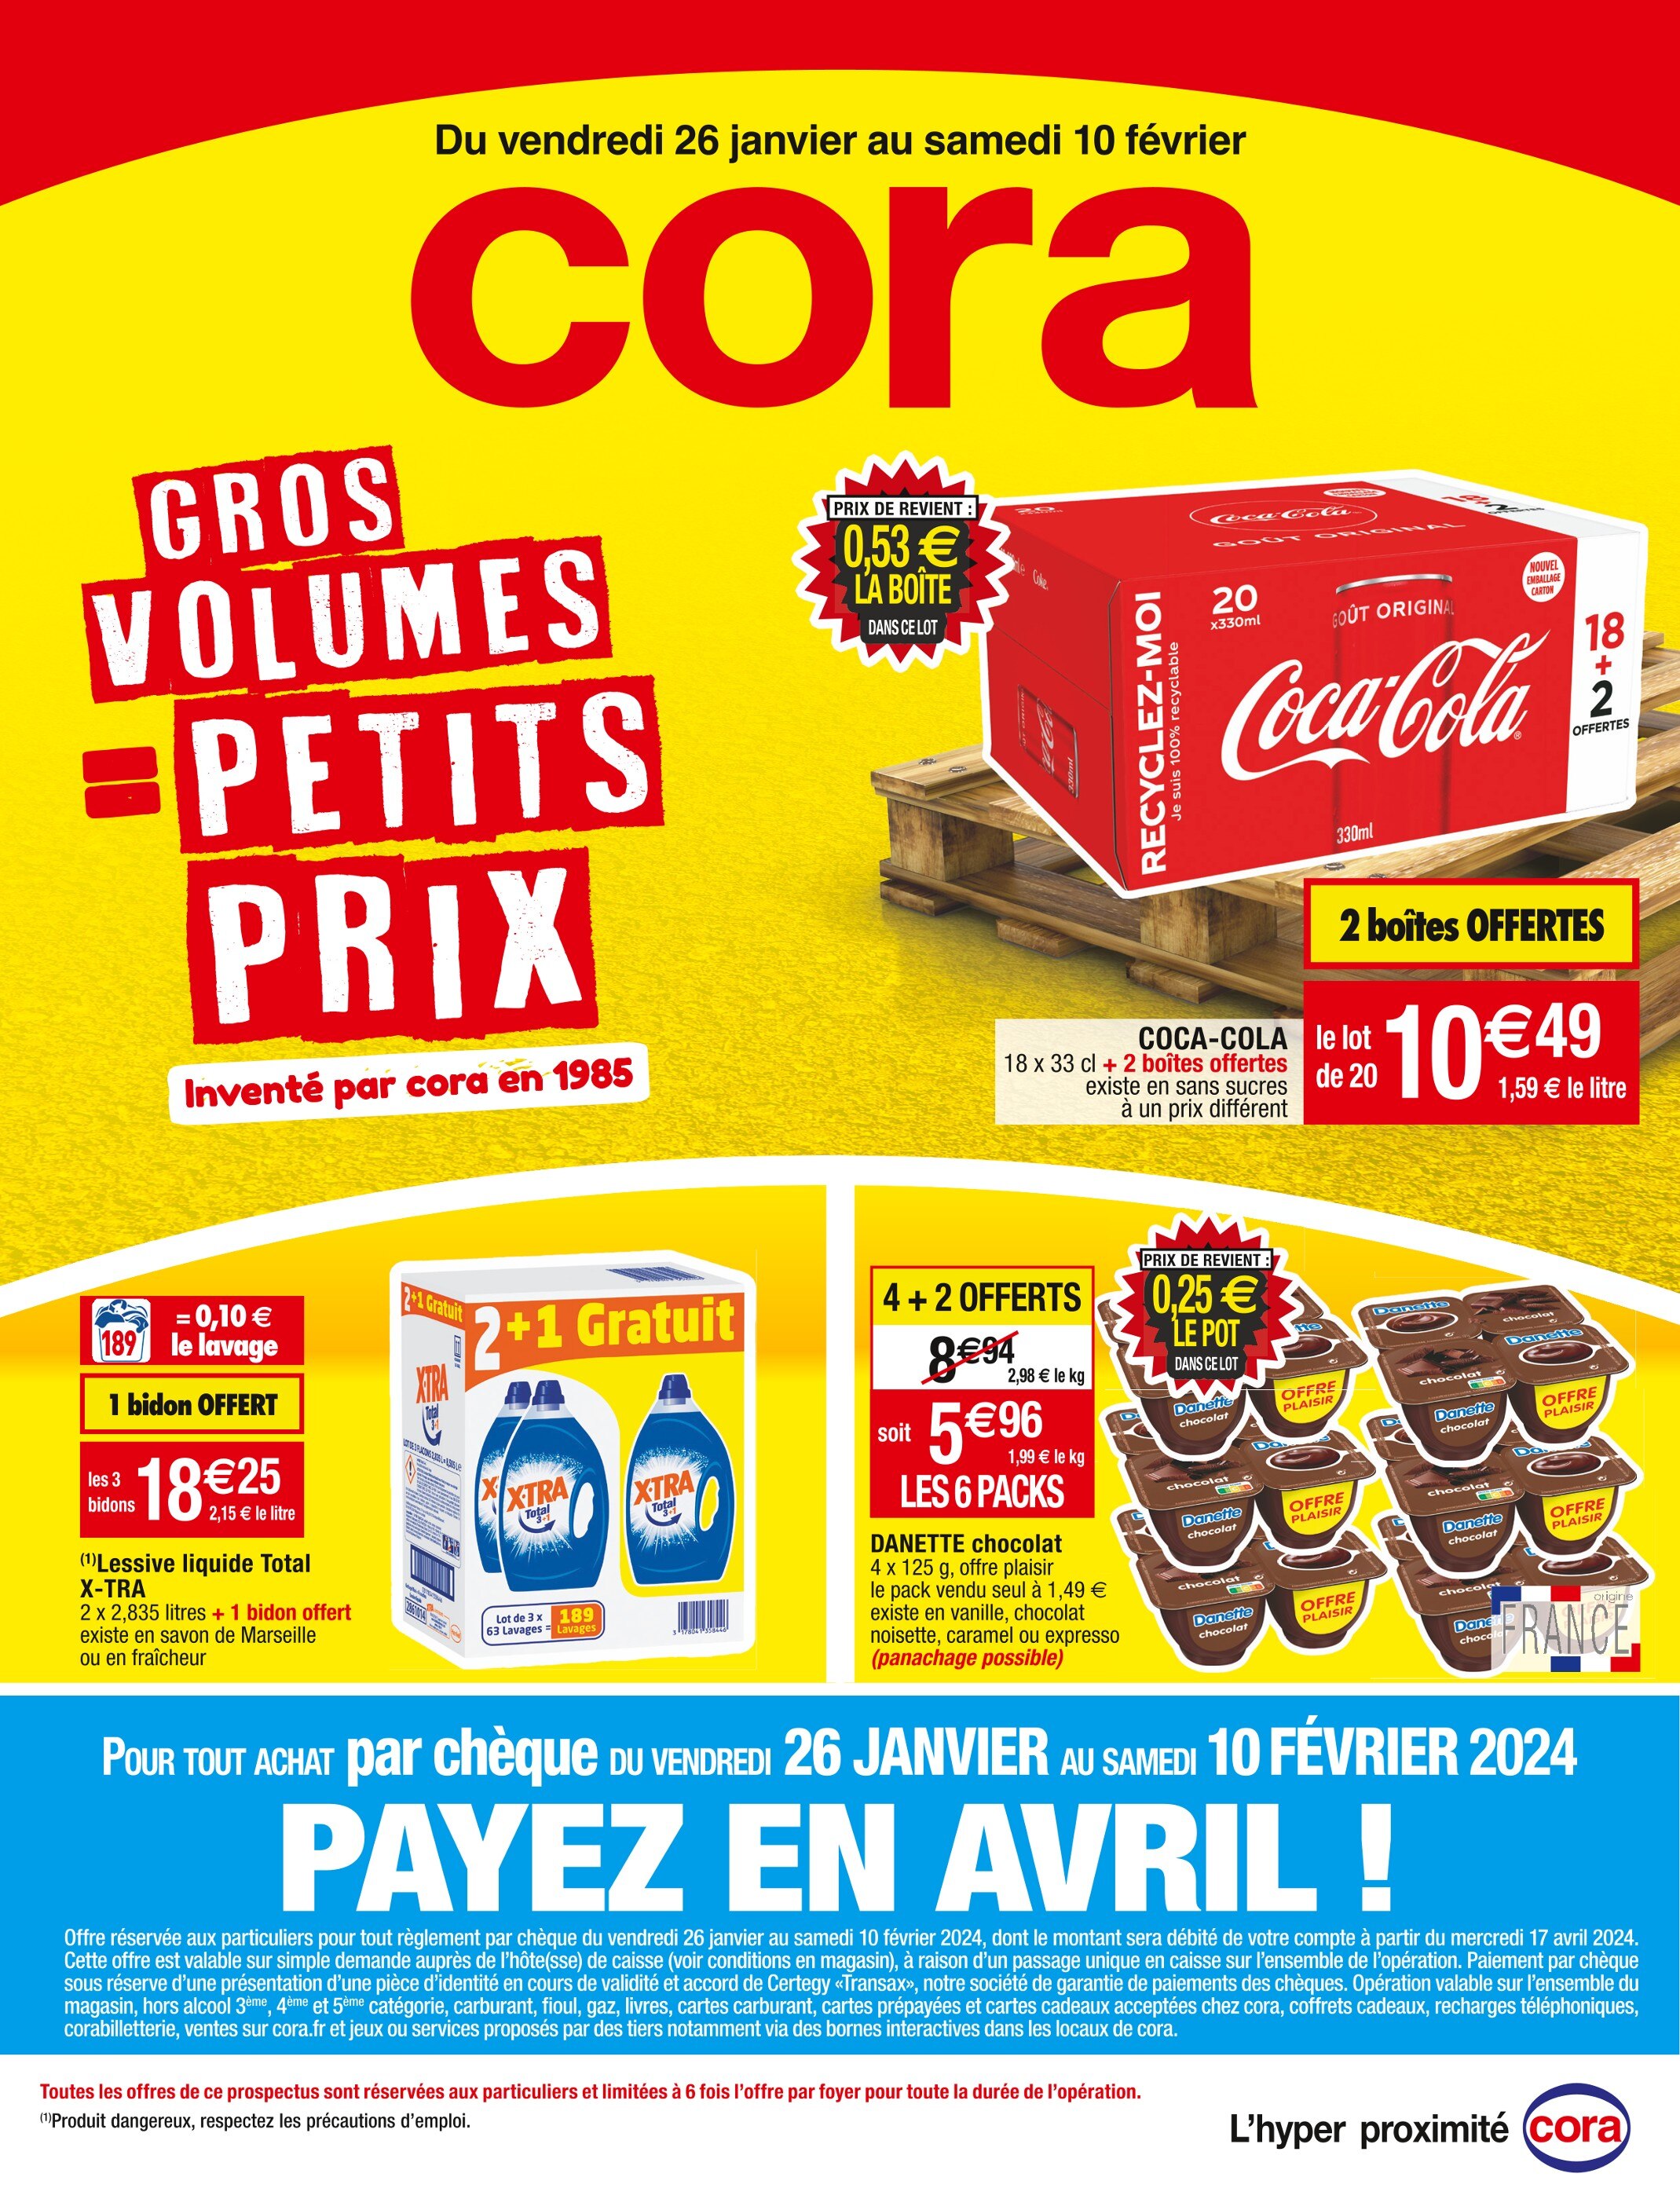 Lessive Liquide Carrefour ᐅ Promos et prix dans le catalogue de la semaine